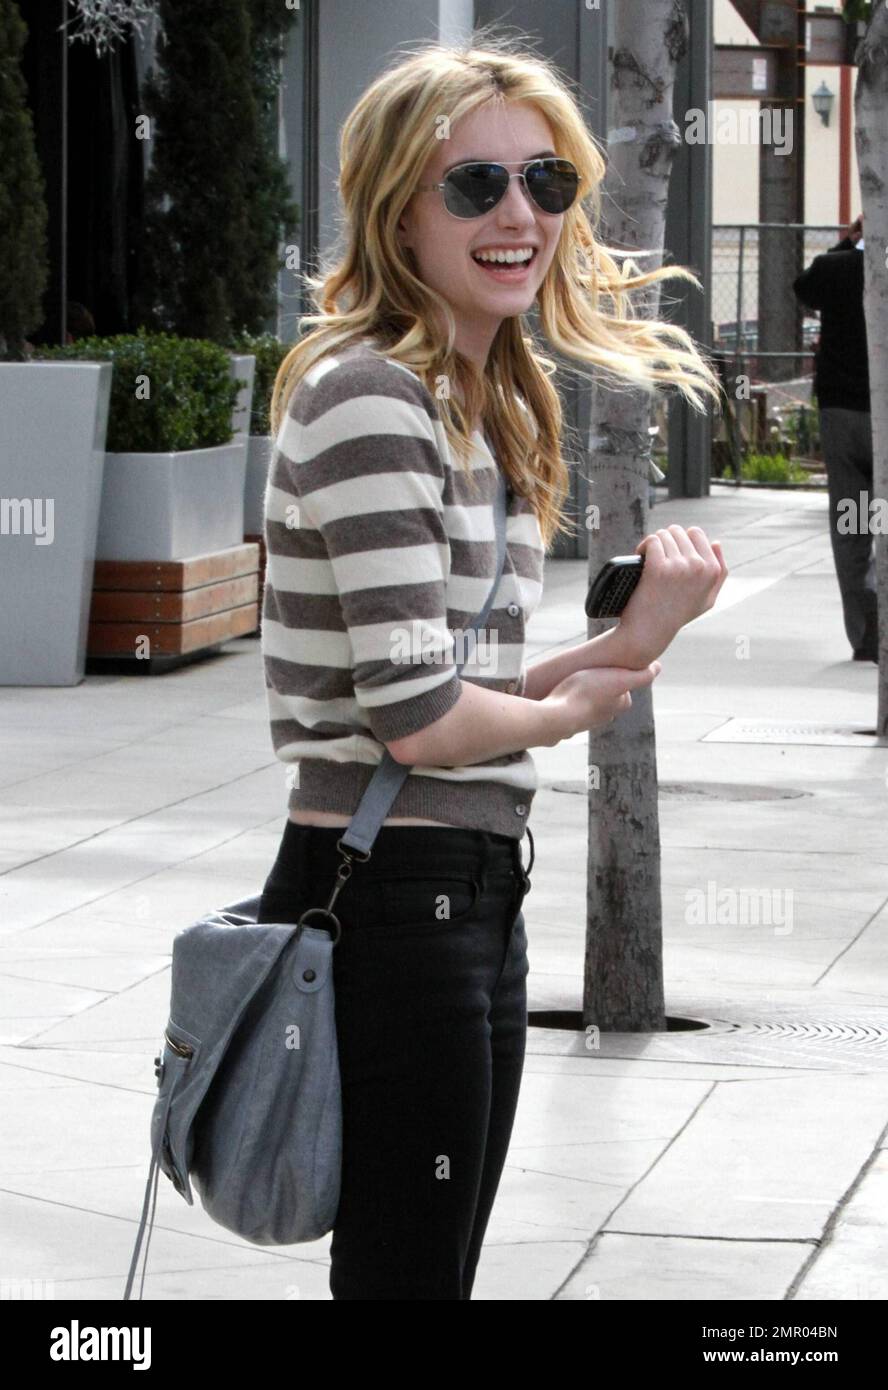 Indossando un top a righe, jeans neri e sandali da salone, l'attrice Emma  Roberts ondeggia dopo aver lasciato un appuntamento con le unghie in un  salone locale. Roberts chiacchierò sul suo cellulare